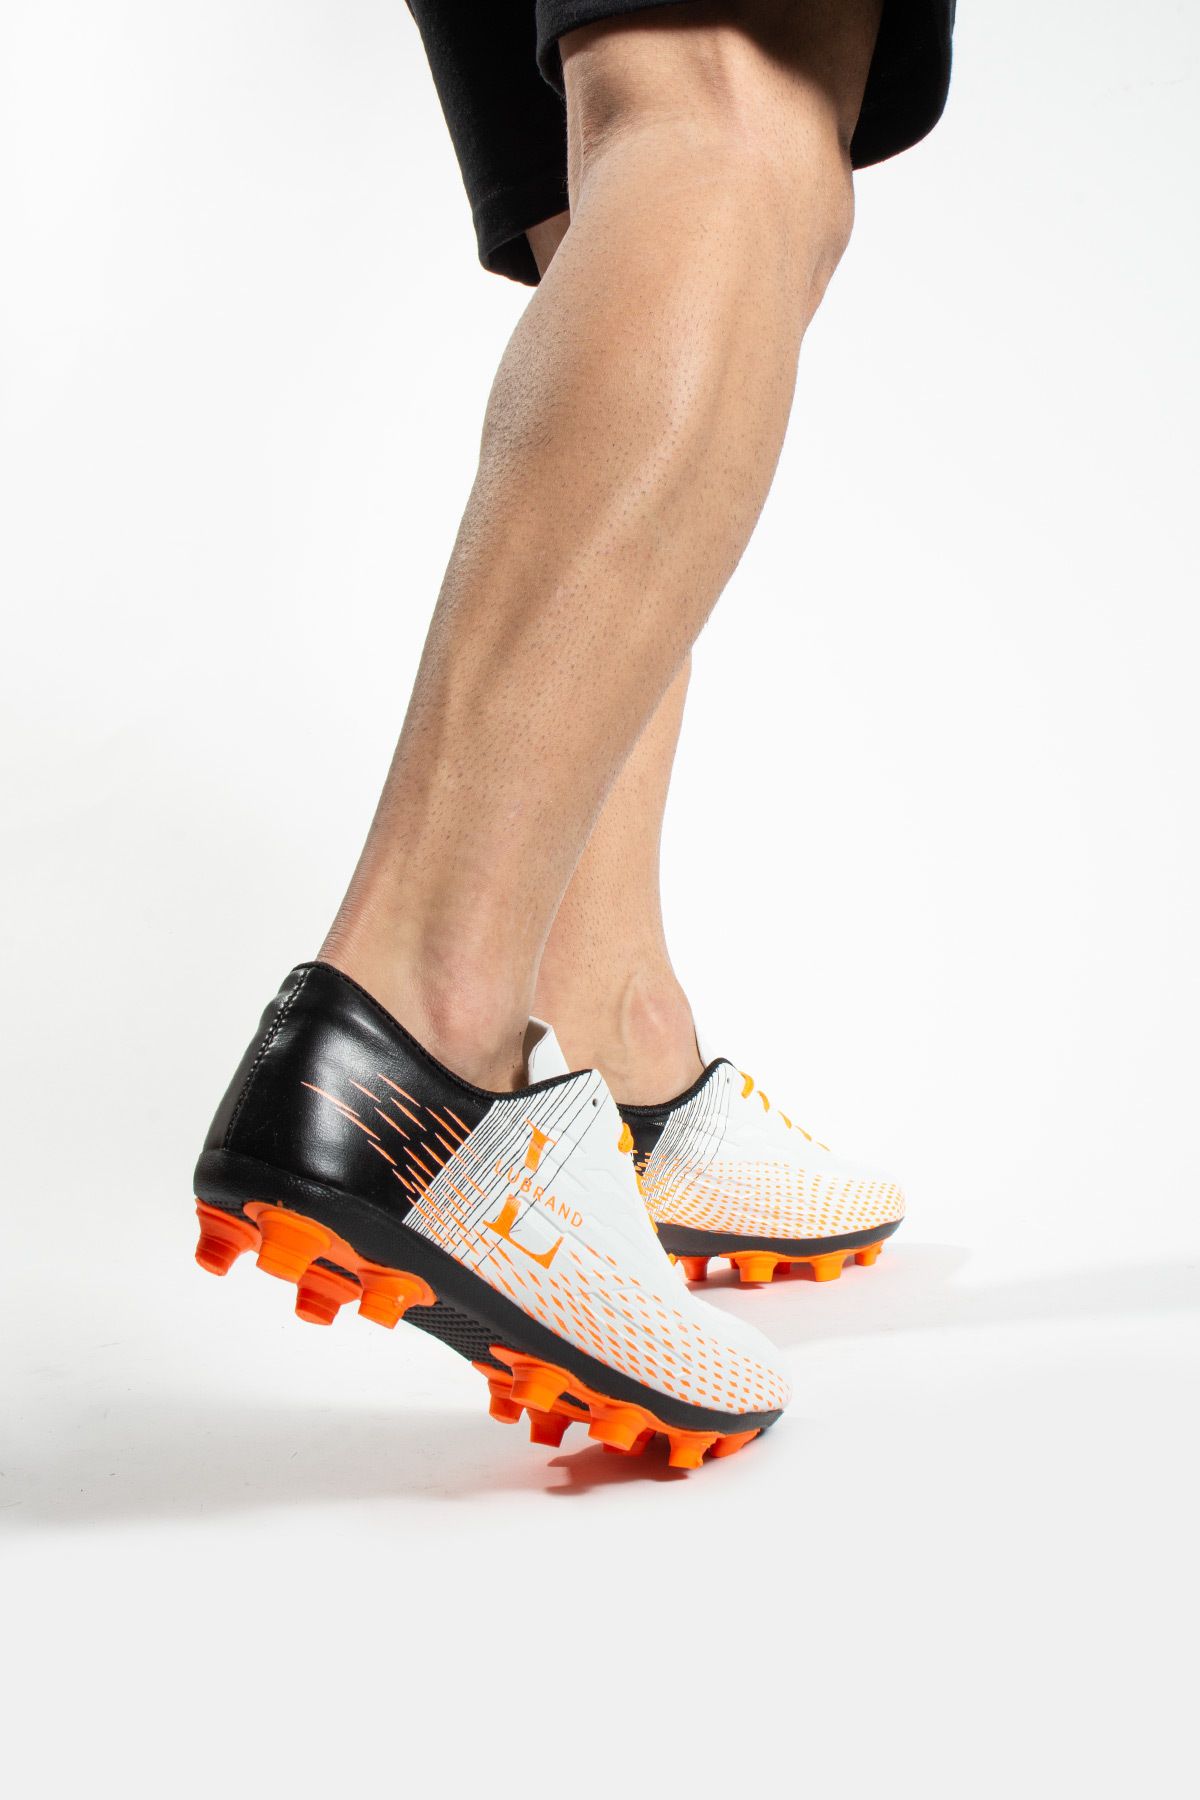 Lubrand Beyaz Turuncu Çim Halı Saha Kramponu Futbol Ayakkabısı